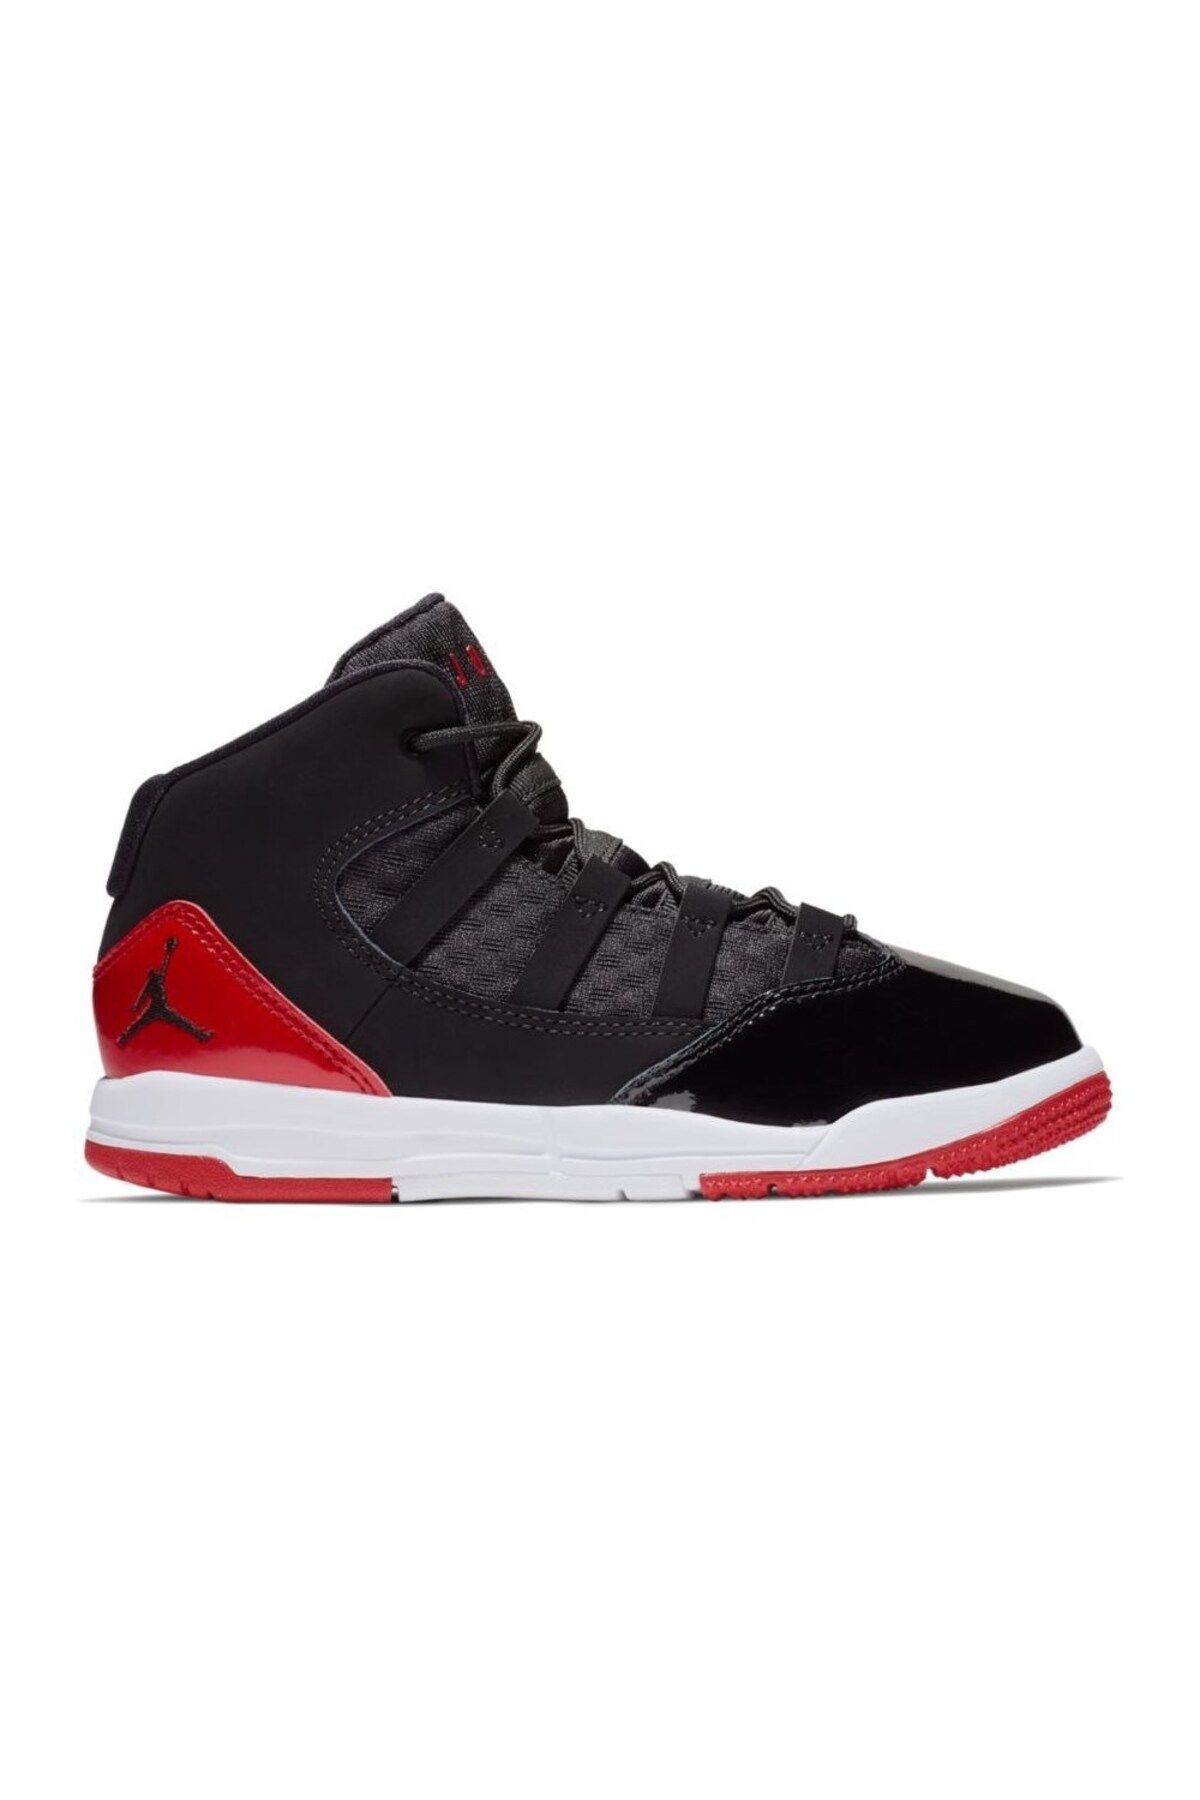 Nike - Jordan Max Aura (PS) AQ9216 006 Özel Seri Ayakkabı Bağcıklı Kalıp 1 Numara Dardır